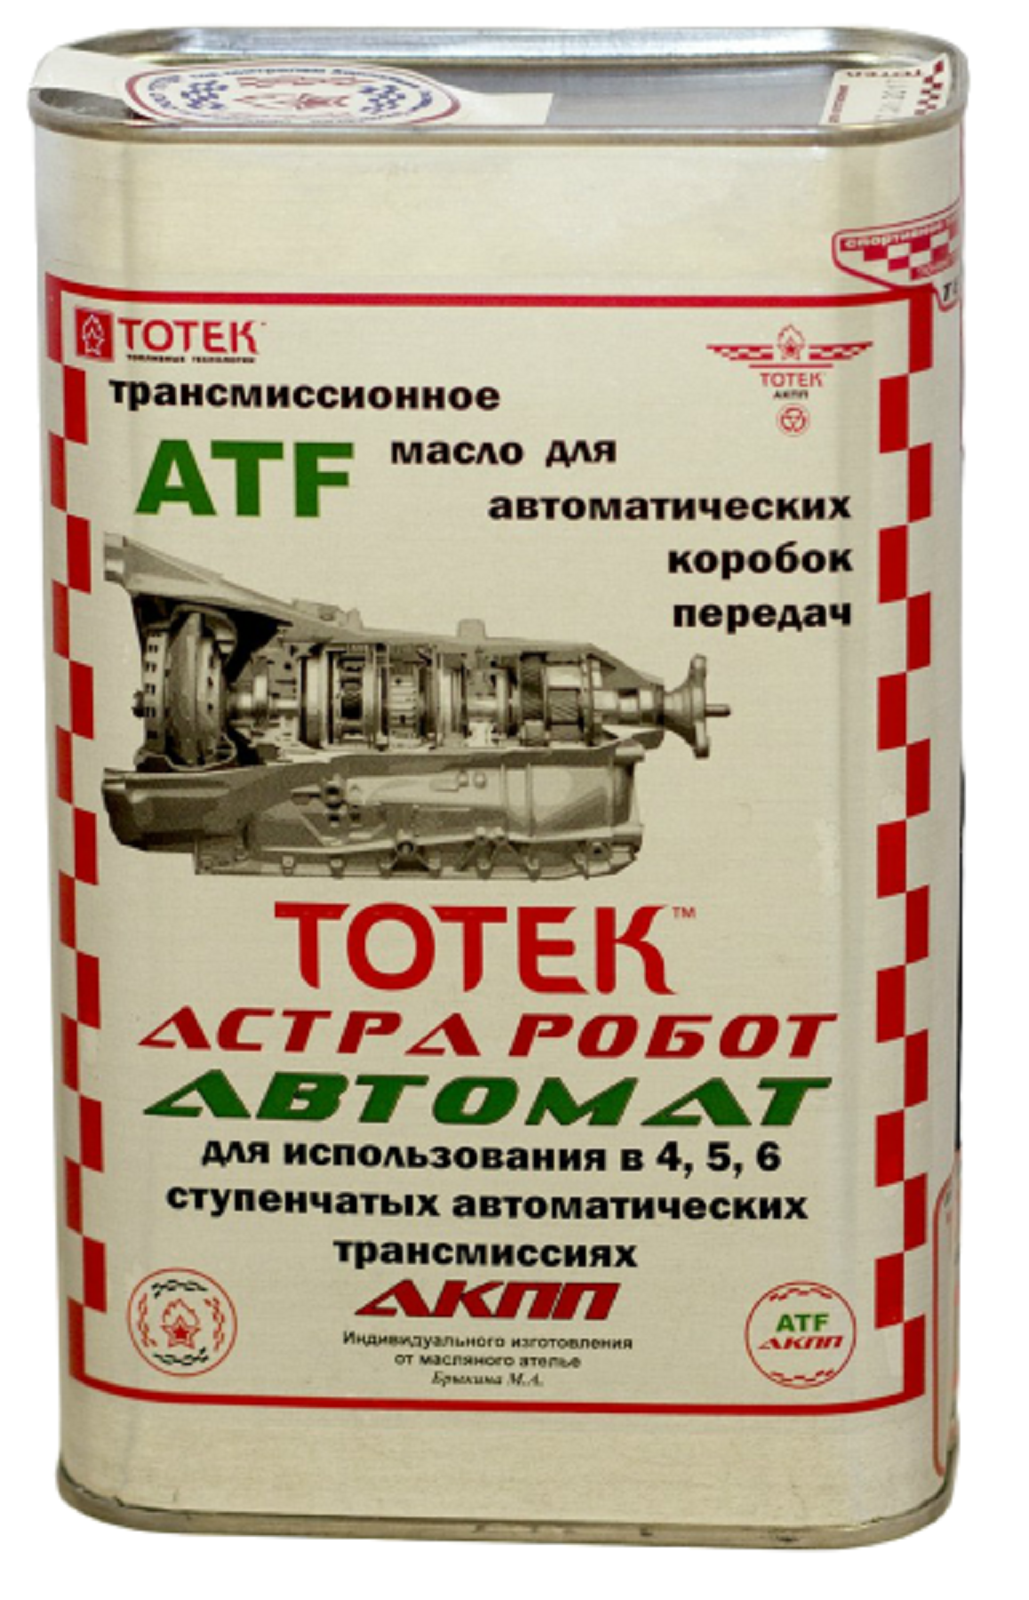 Трансмиссионное масло для АКПП ТОТЕК Астра Робот Автомат 4 литра avto004